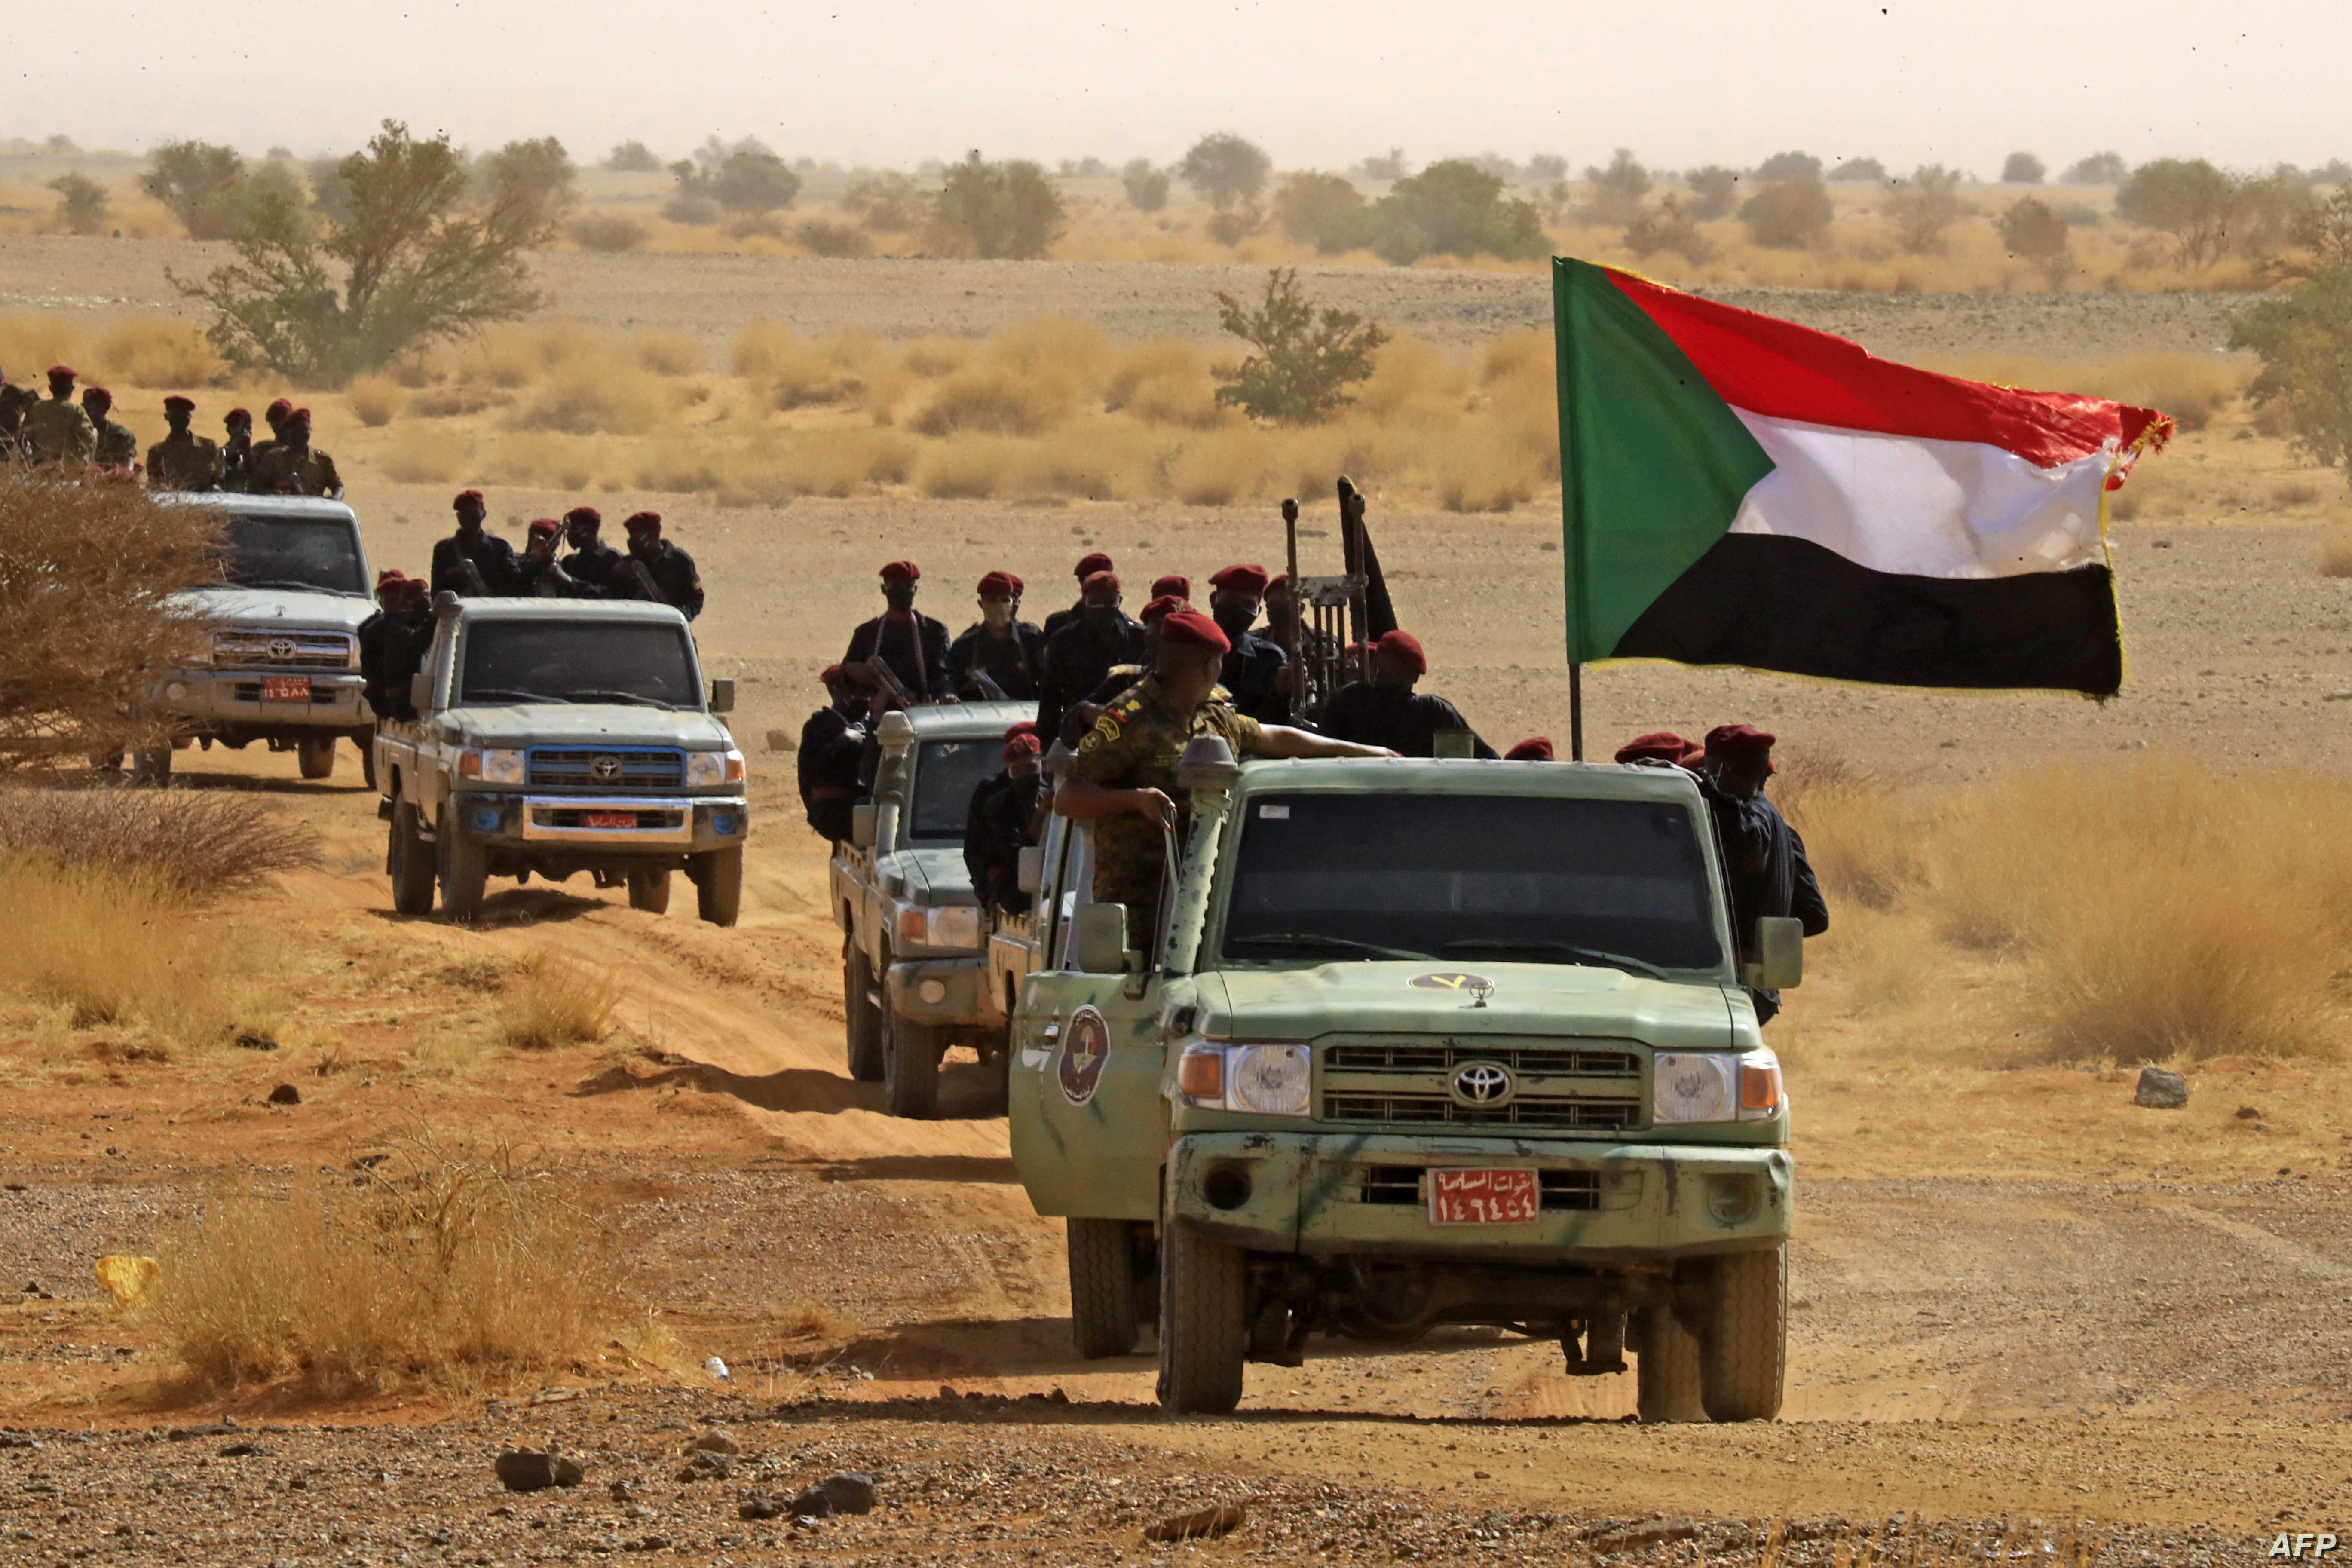 قوات الدعم السريع في السودان ضمن أخبار السودان العاجلة.jpg